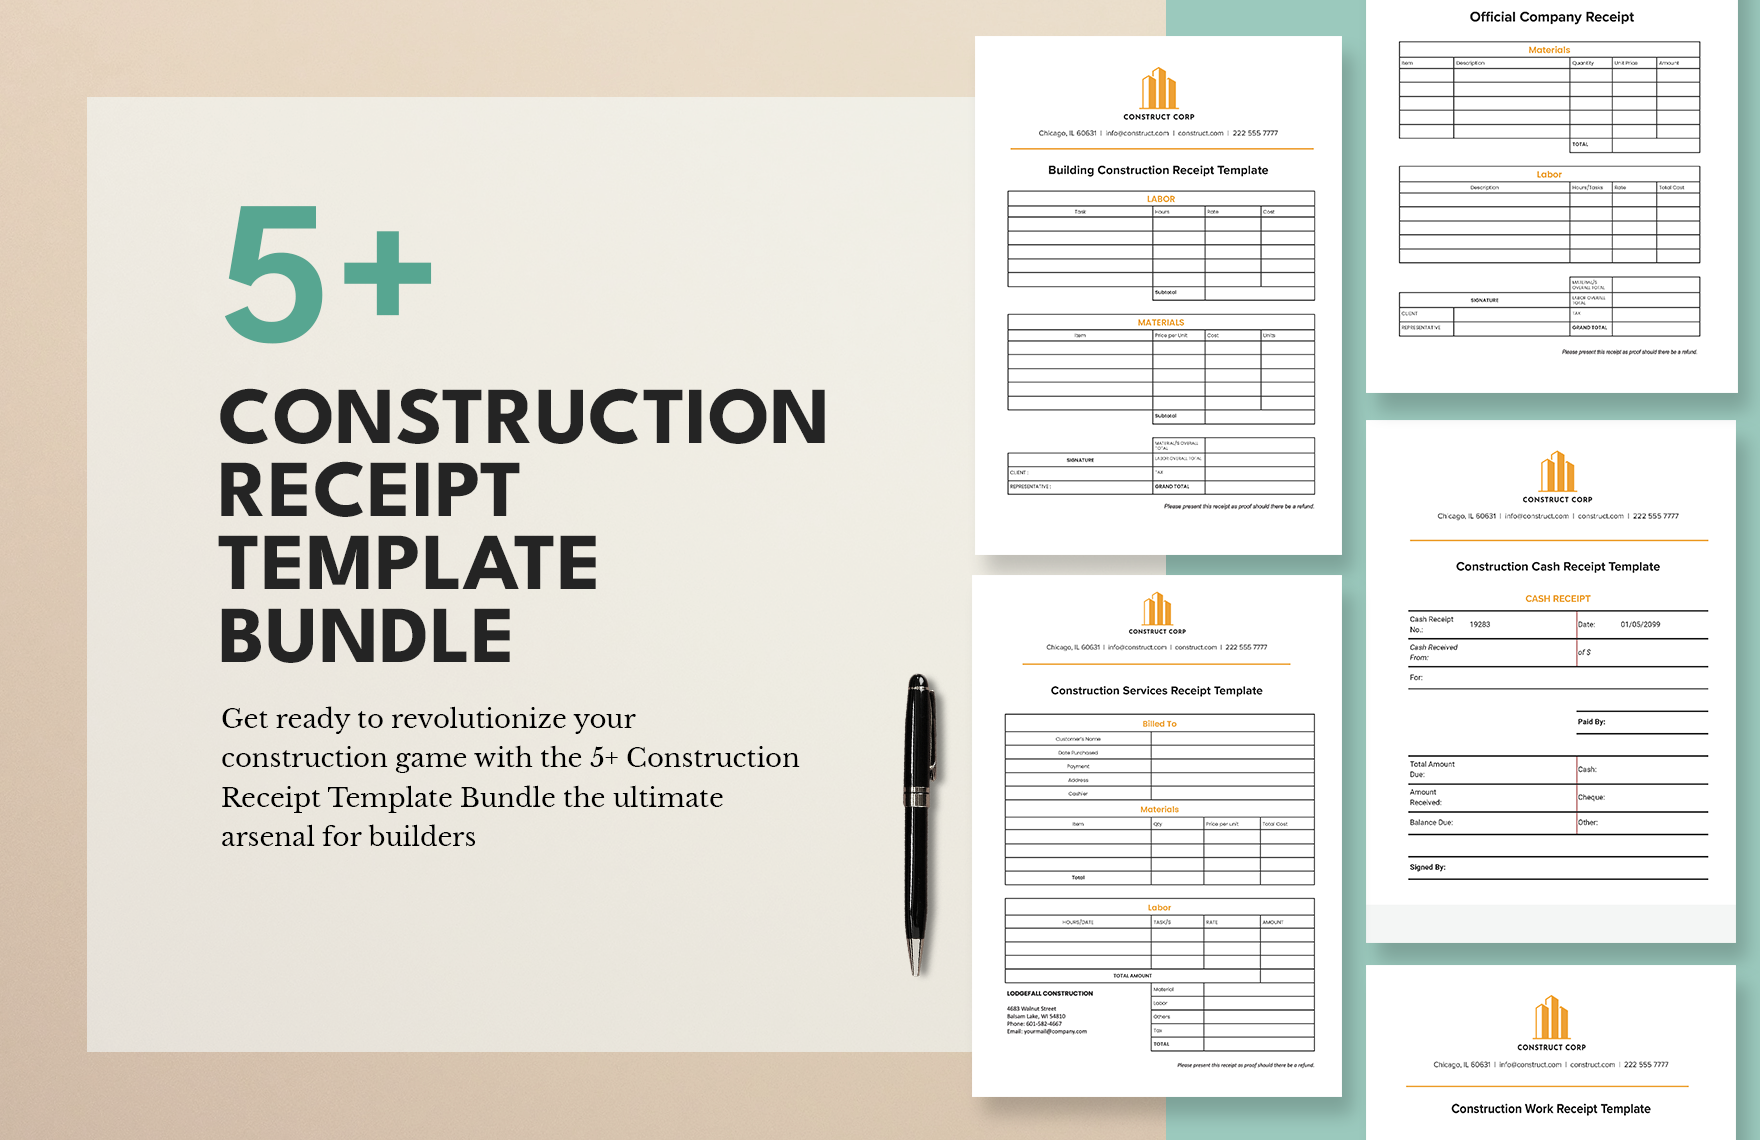 Construction Receipt Template Bundle